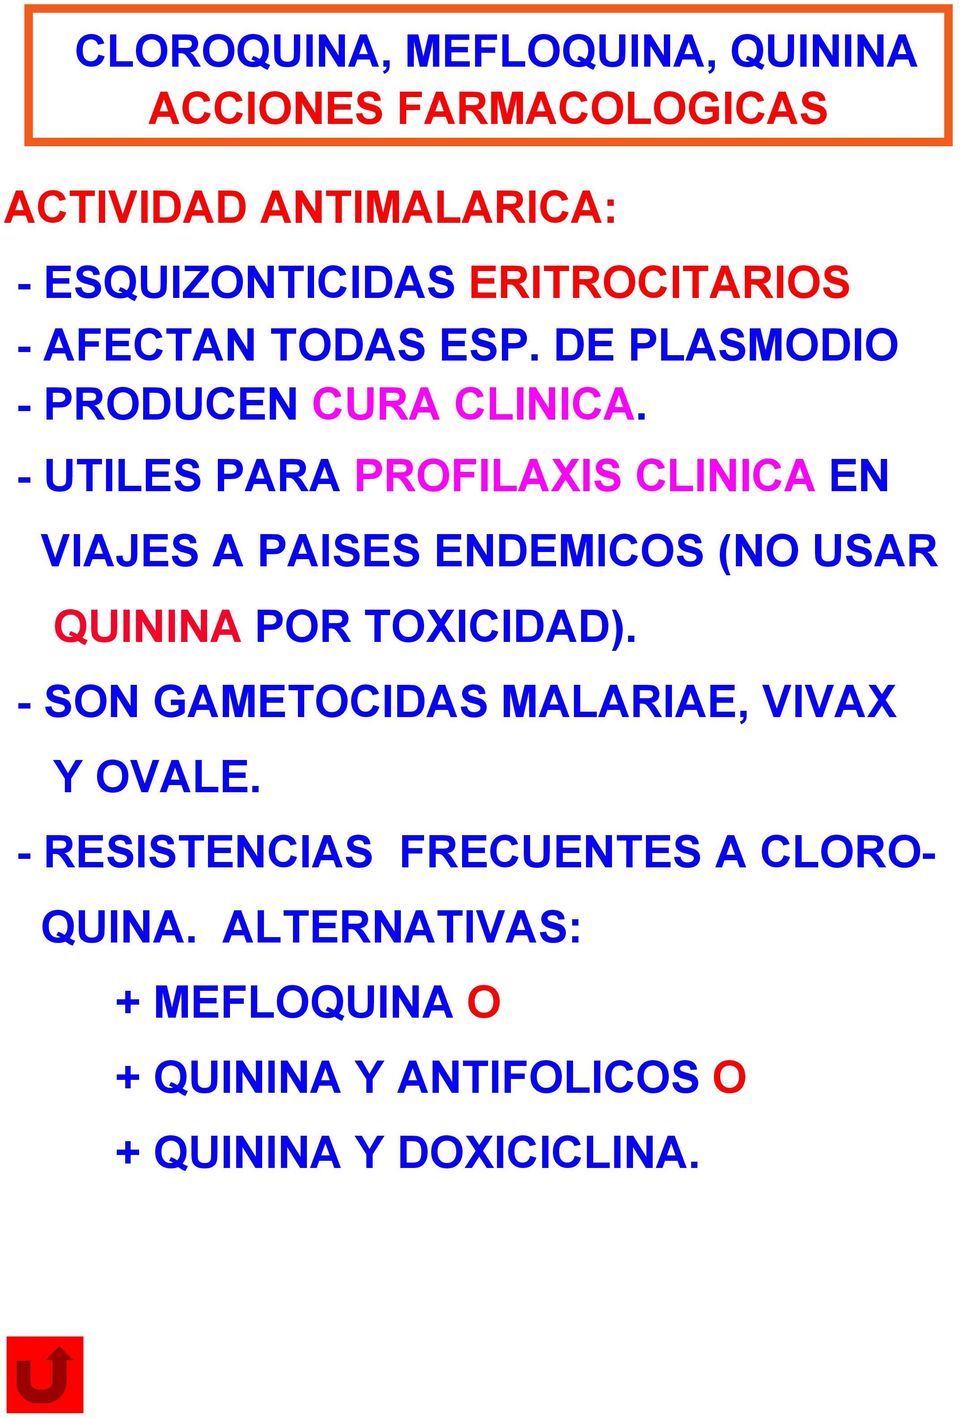 - UTILES PARA PROFILAXIS CLINICA EN VIAJES A PAISES ENDEMICOS (NO USAR QUININA POR TOXICIDAD).